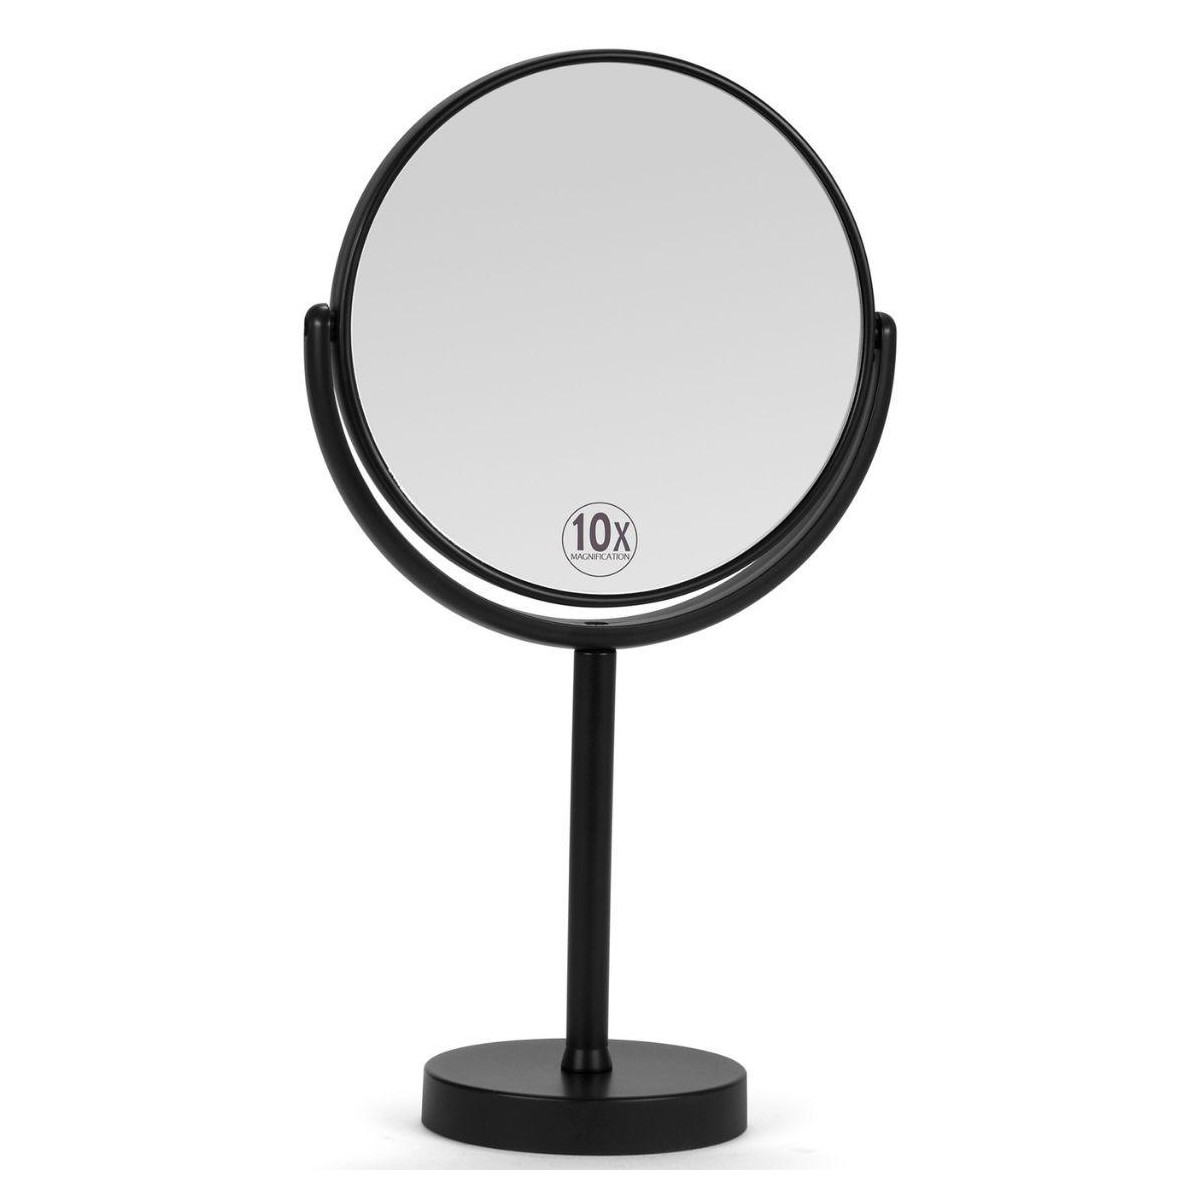 Miroir grossissant (x10) double face en métal noir mat